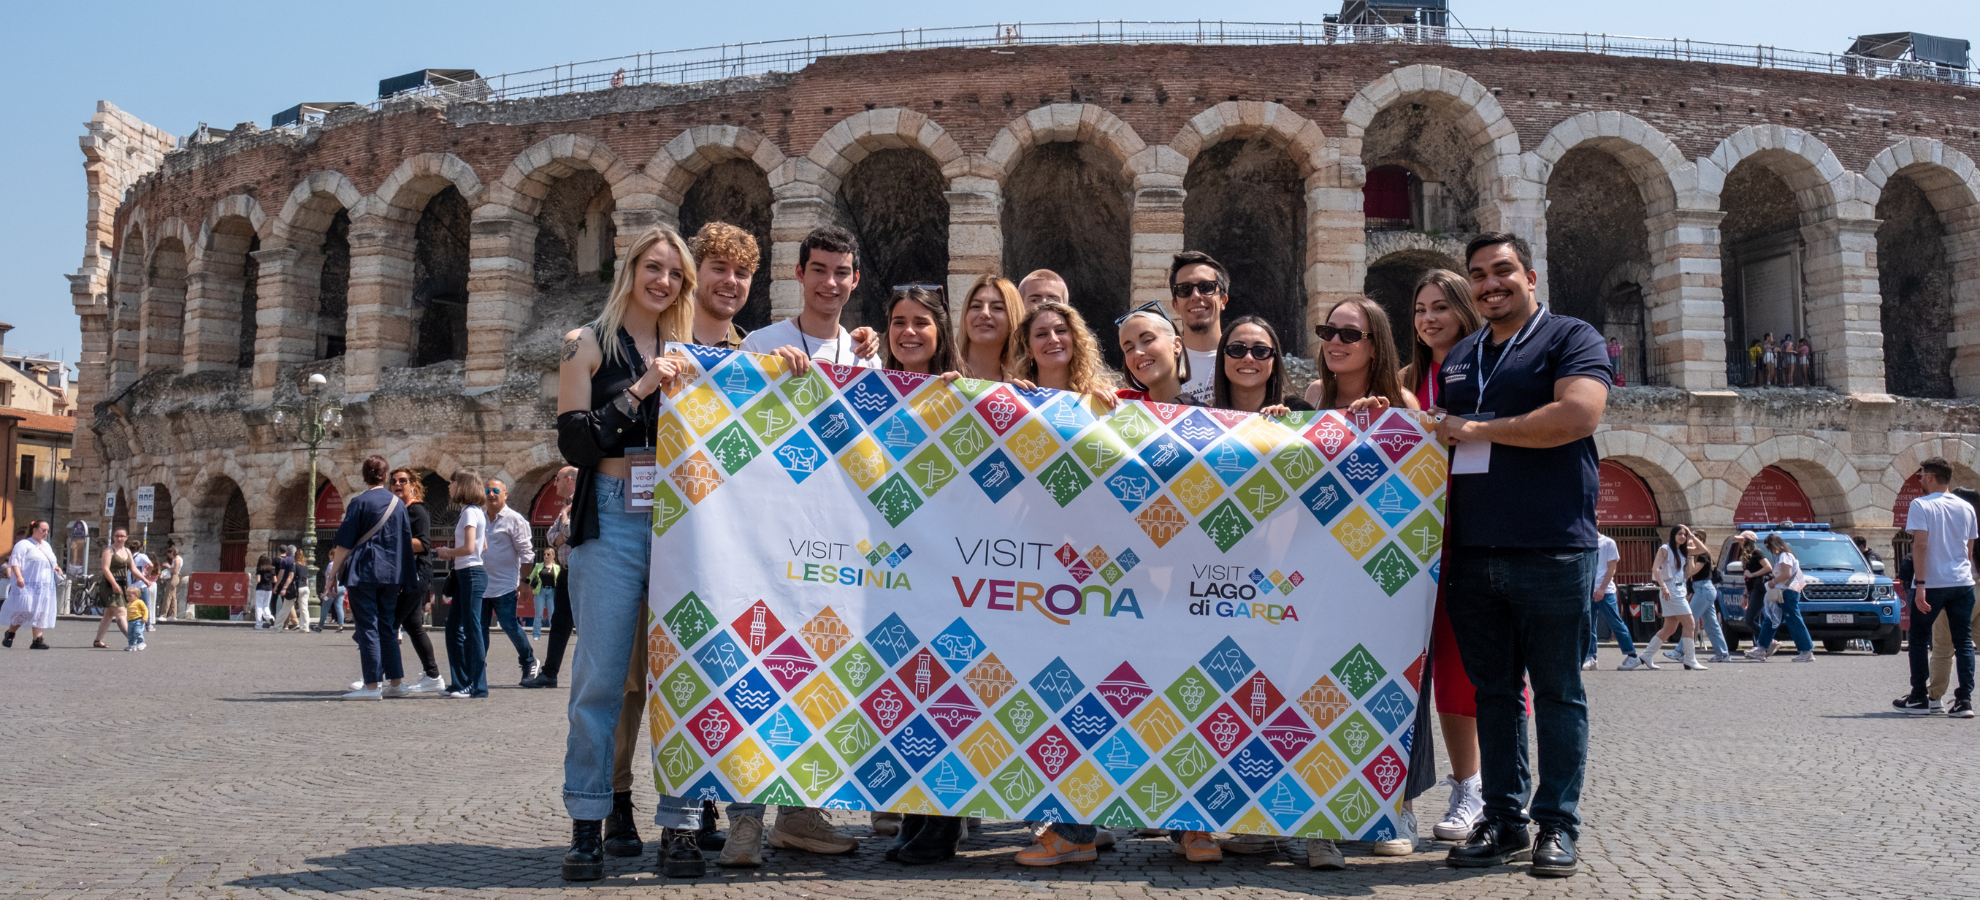 Visit Verona Partener Ufficiale delle Piazze dei Sapori 2023